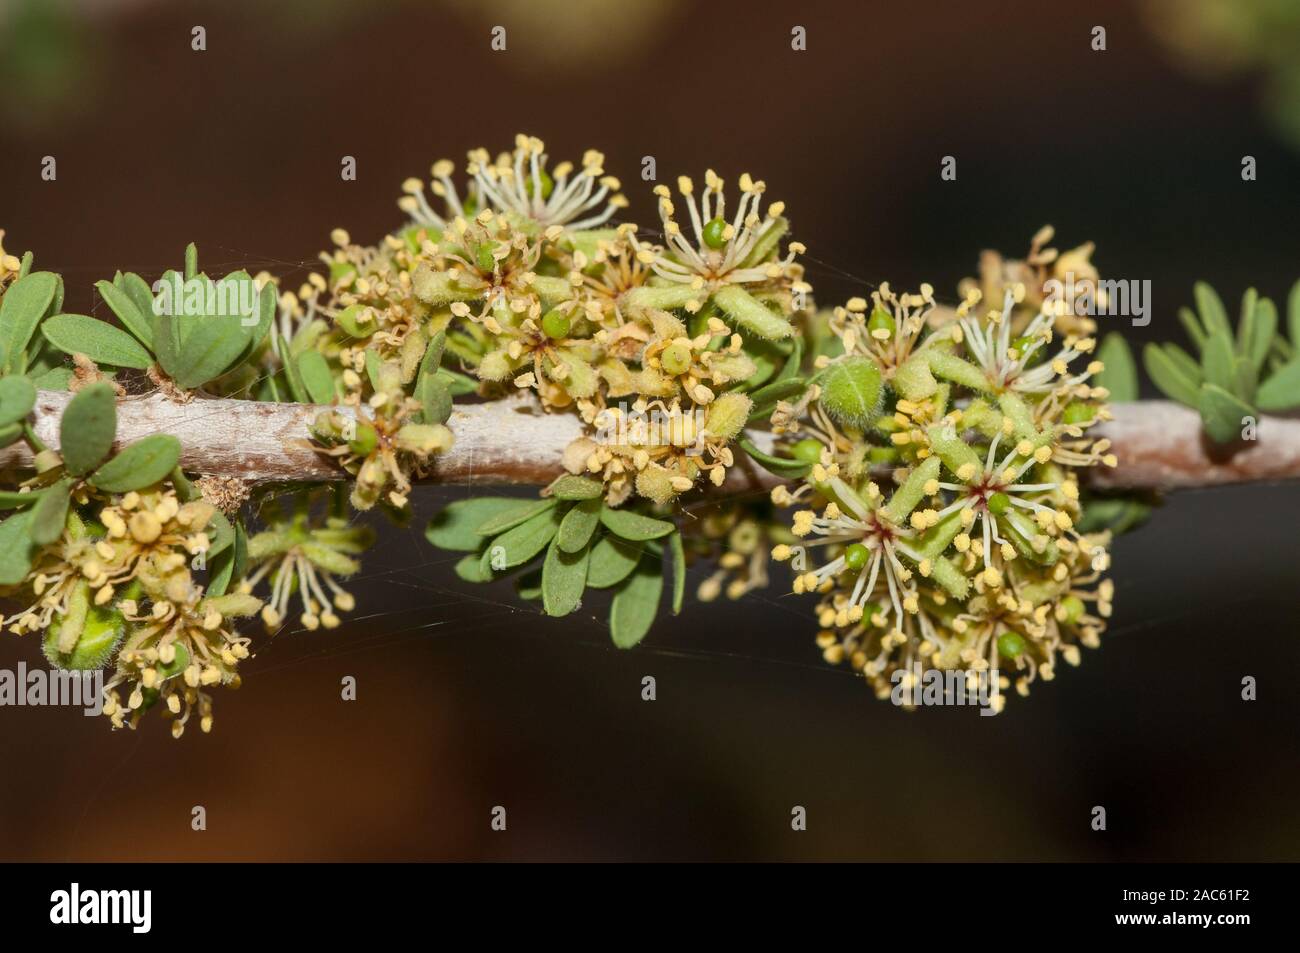 leaf detail, Dwarf bush-cherry, Maerua parvifolia, spitzkoppe, Namibia Stock Photo